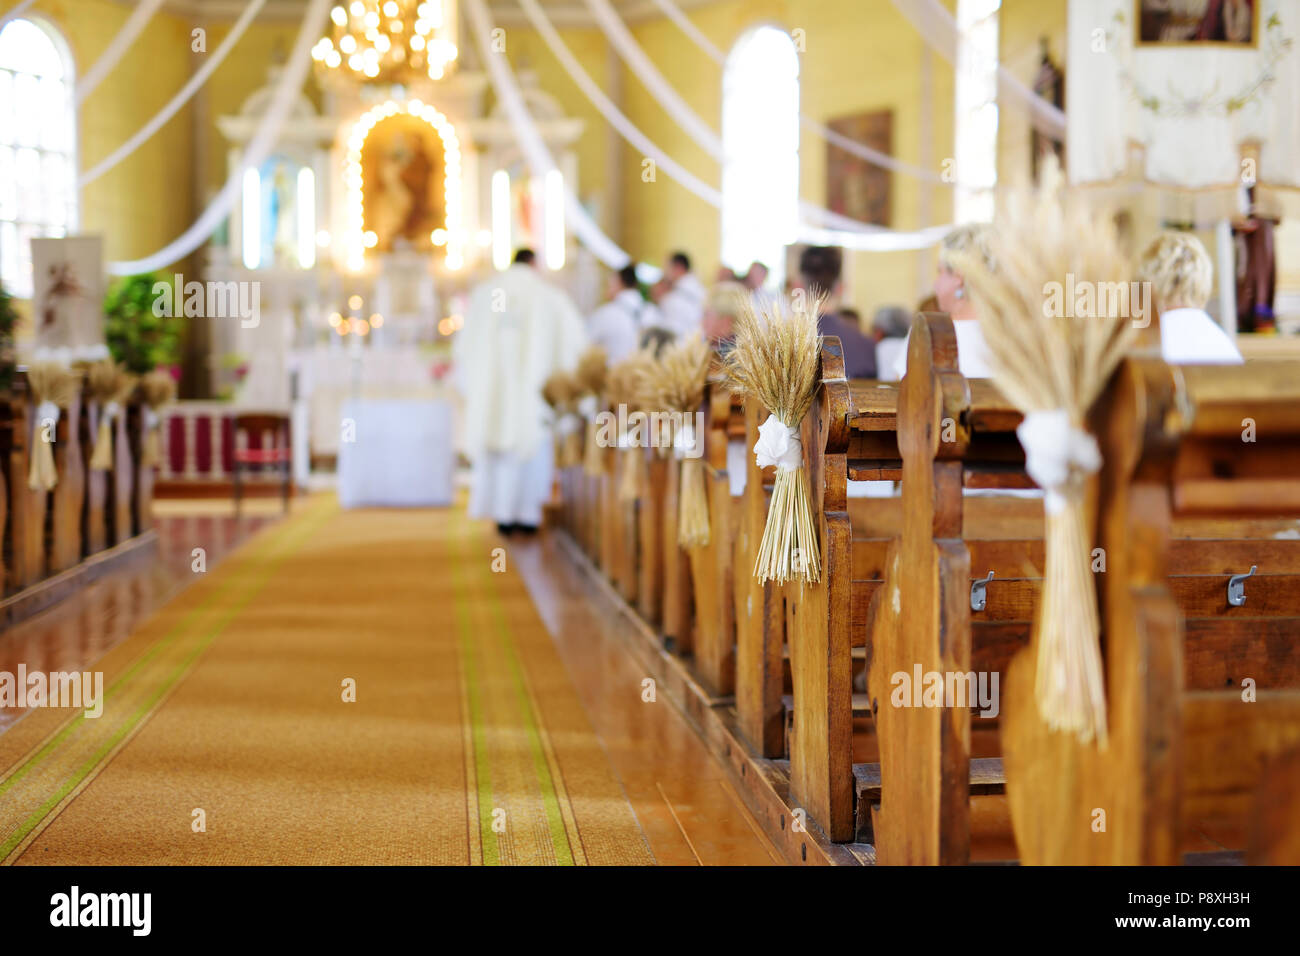 https://c8.alamy.com/compde/p8xh3h/schone-roggen-hochzeit-dekoration-in-einer-kirche-wahrend-katholische-hochzeit-zeremonie-p8xh3h.jpg